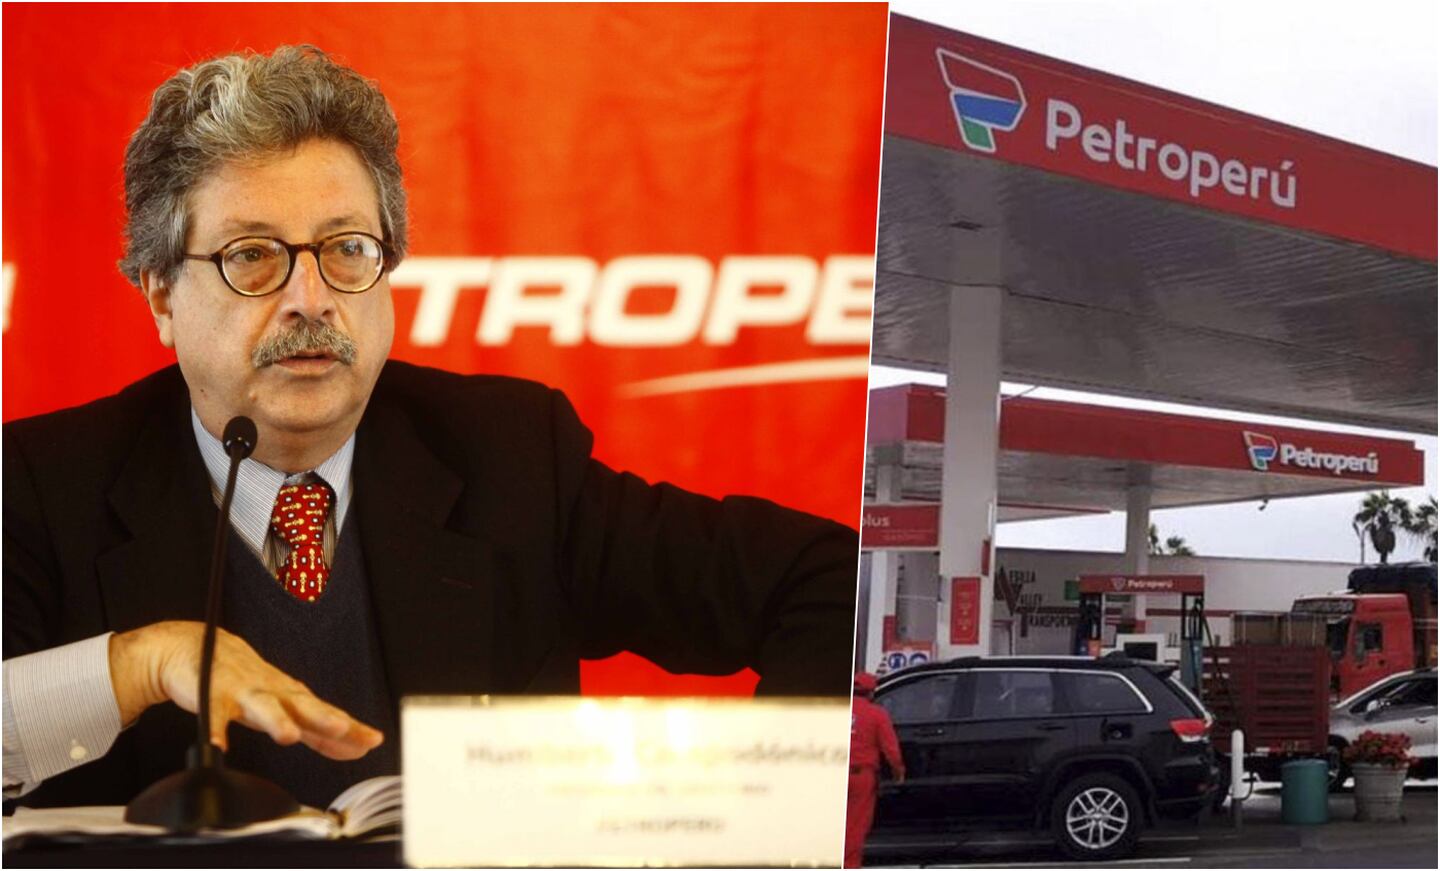 En agosto del 2011 Humberto Campodónico fue designado presidente de Petroperú, durante el gobierno de Ollanta Humala. Fue clave para el proceso de modernización de la Refinería de Talara. En enero del 2013 dejó dicho cargo.dfd